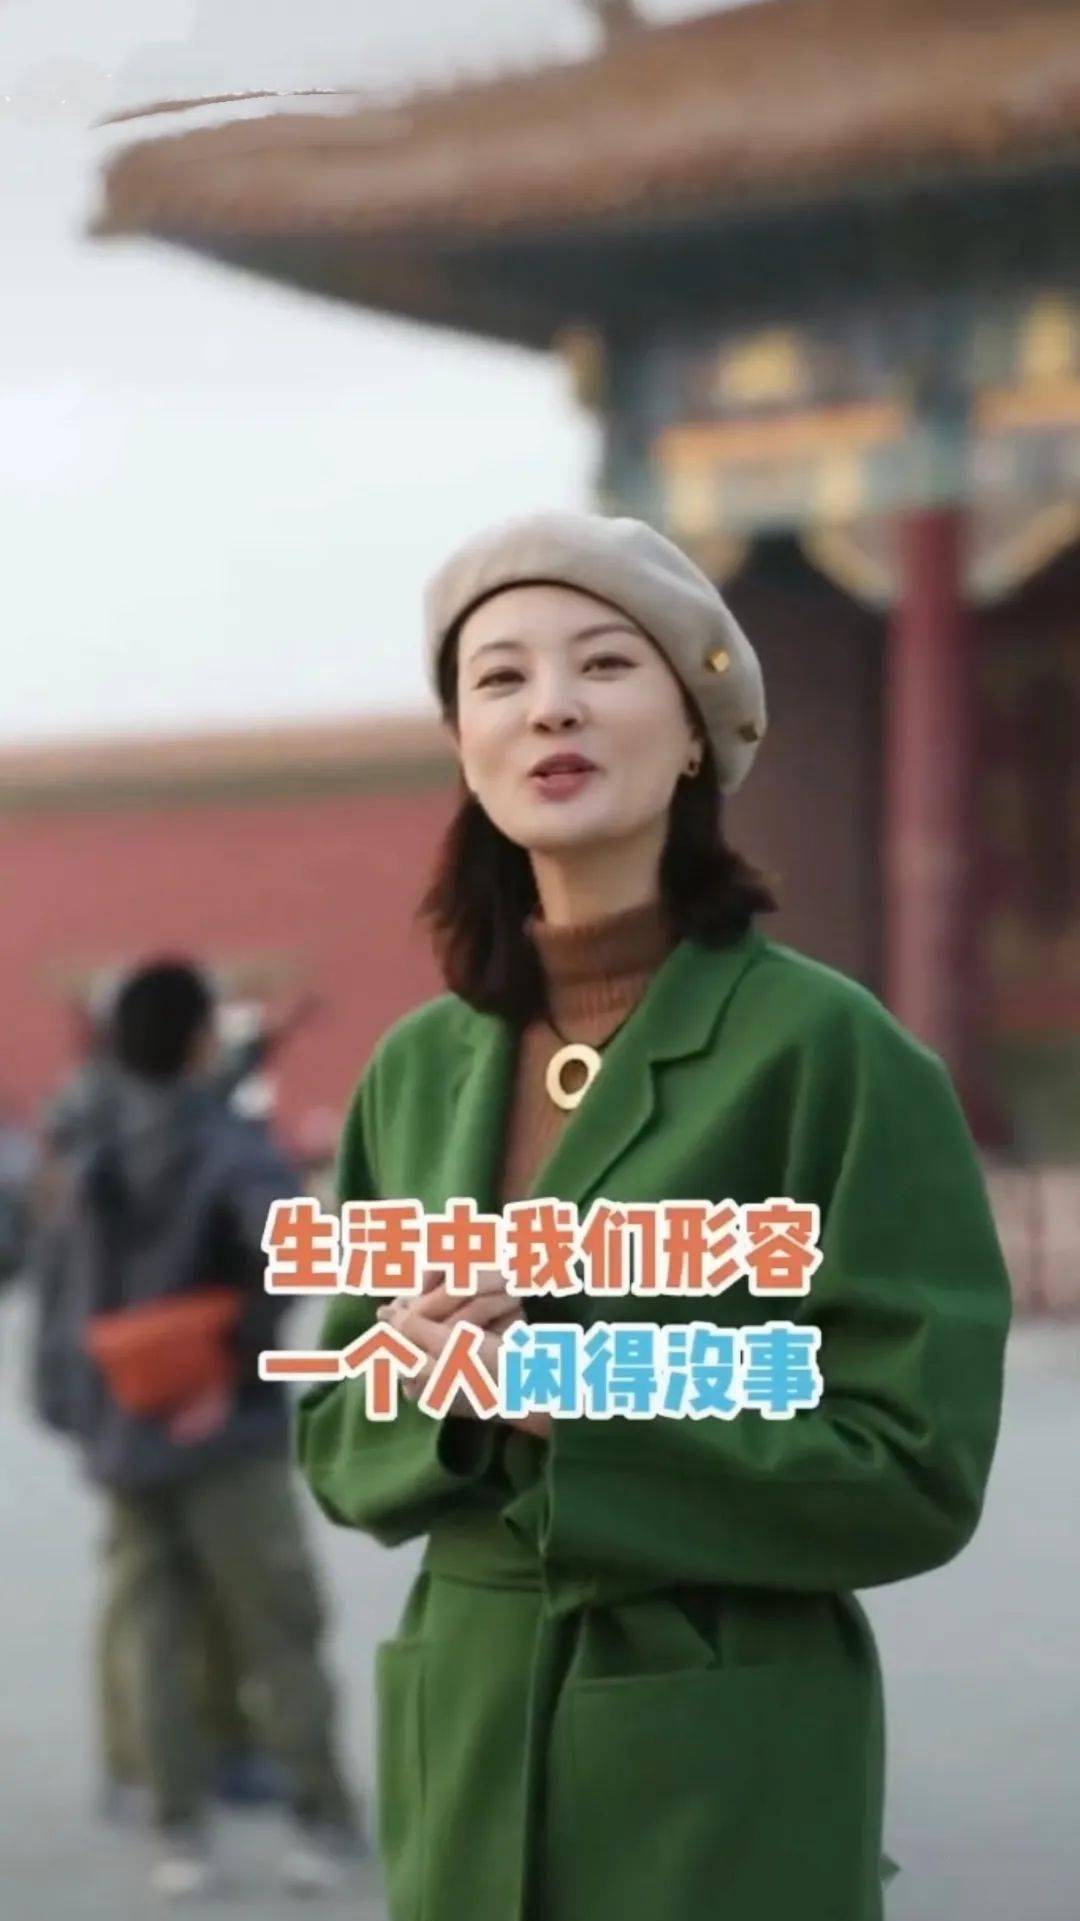 央视主持刘芳菲游故宫真时髦,穿绿大衣戴贝雷帽,一头短发好文艺